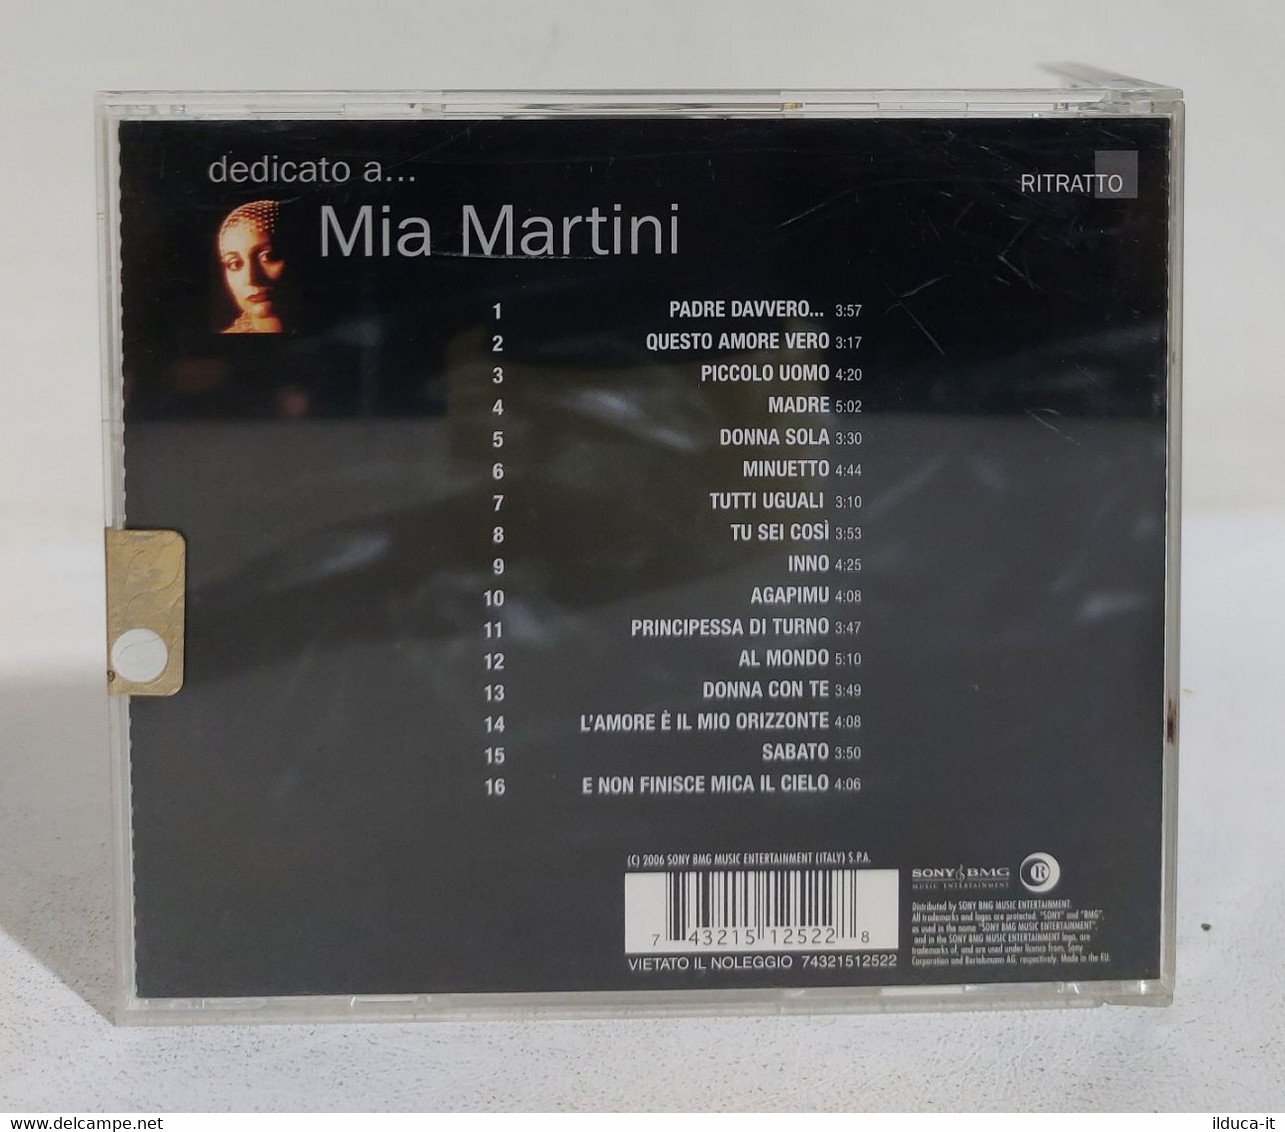 I107935 CD - MIA MARTINI - Dedicato A... - Sony 2006 - Andere - Italiaans